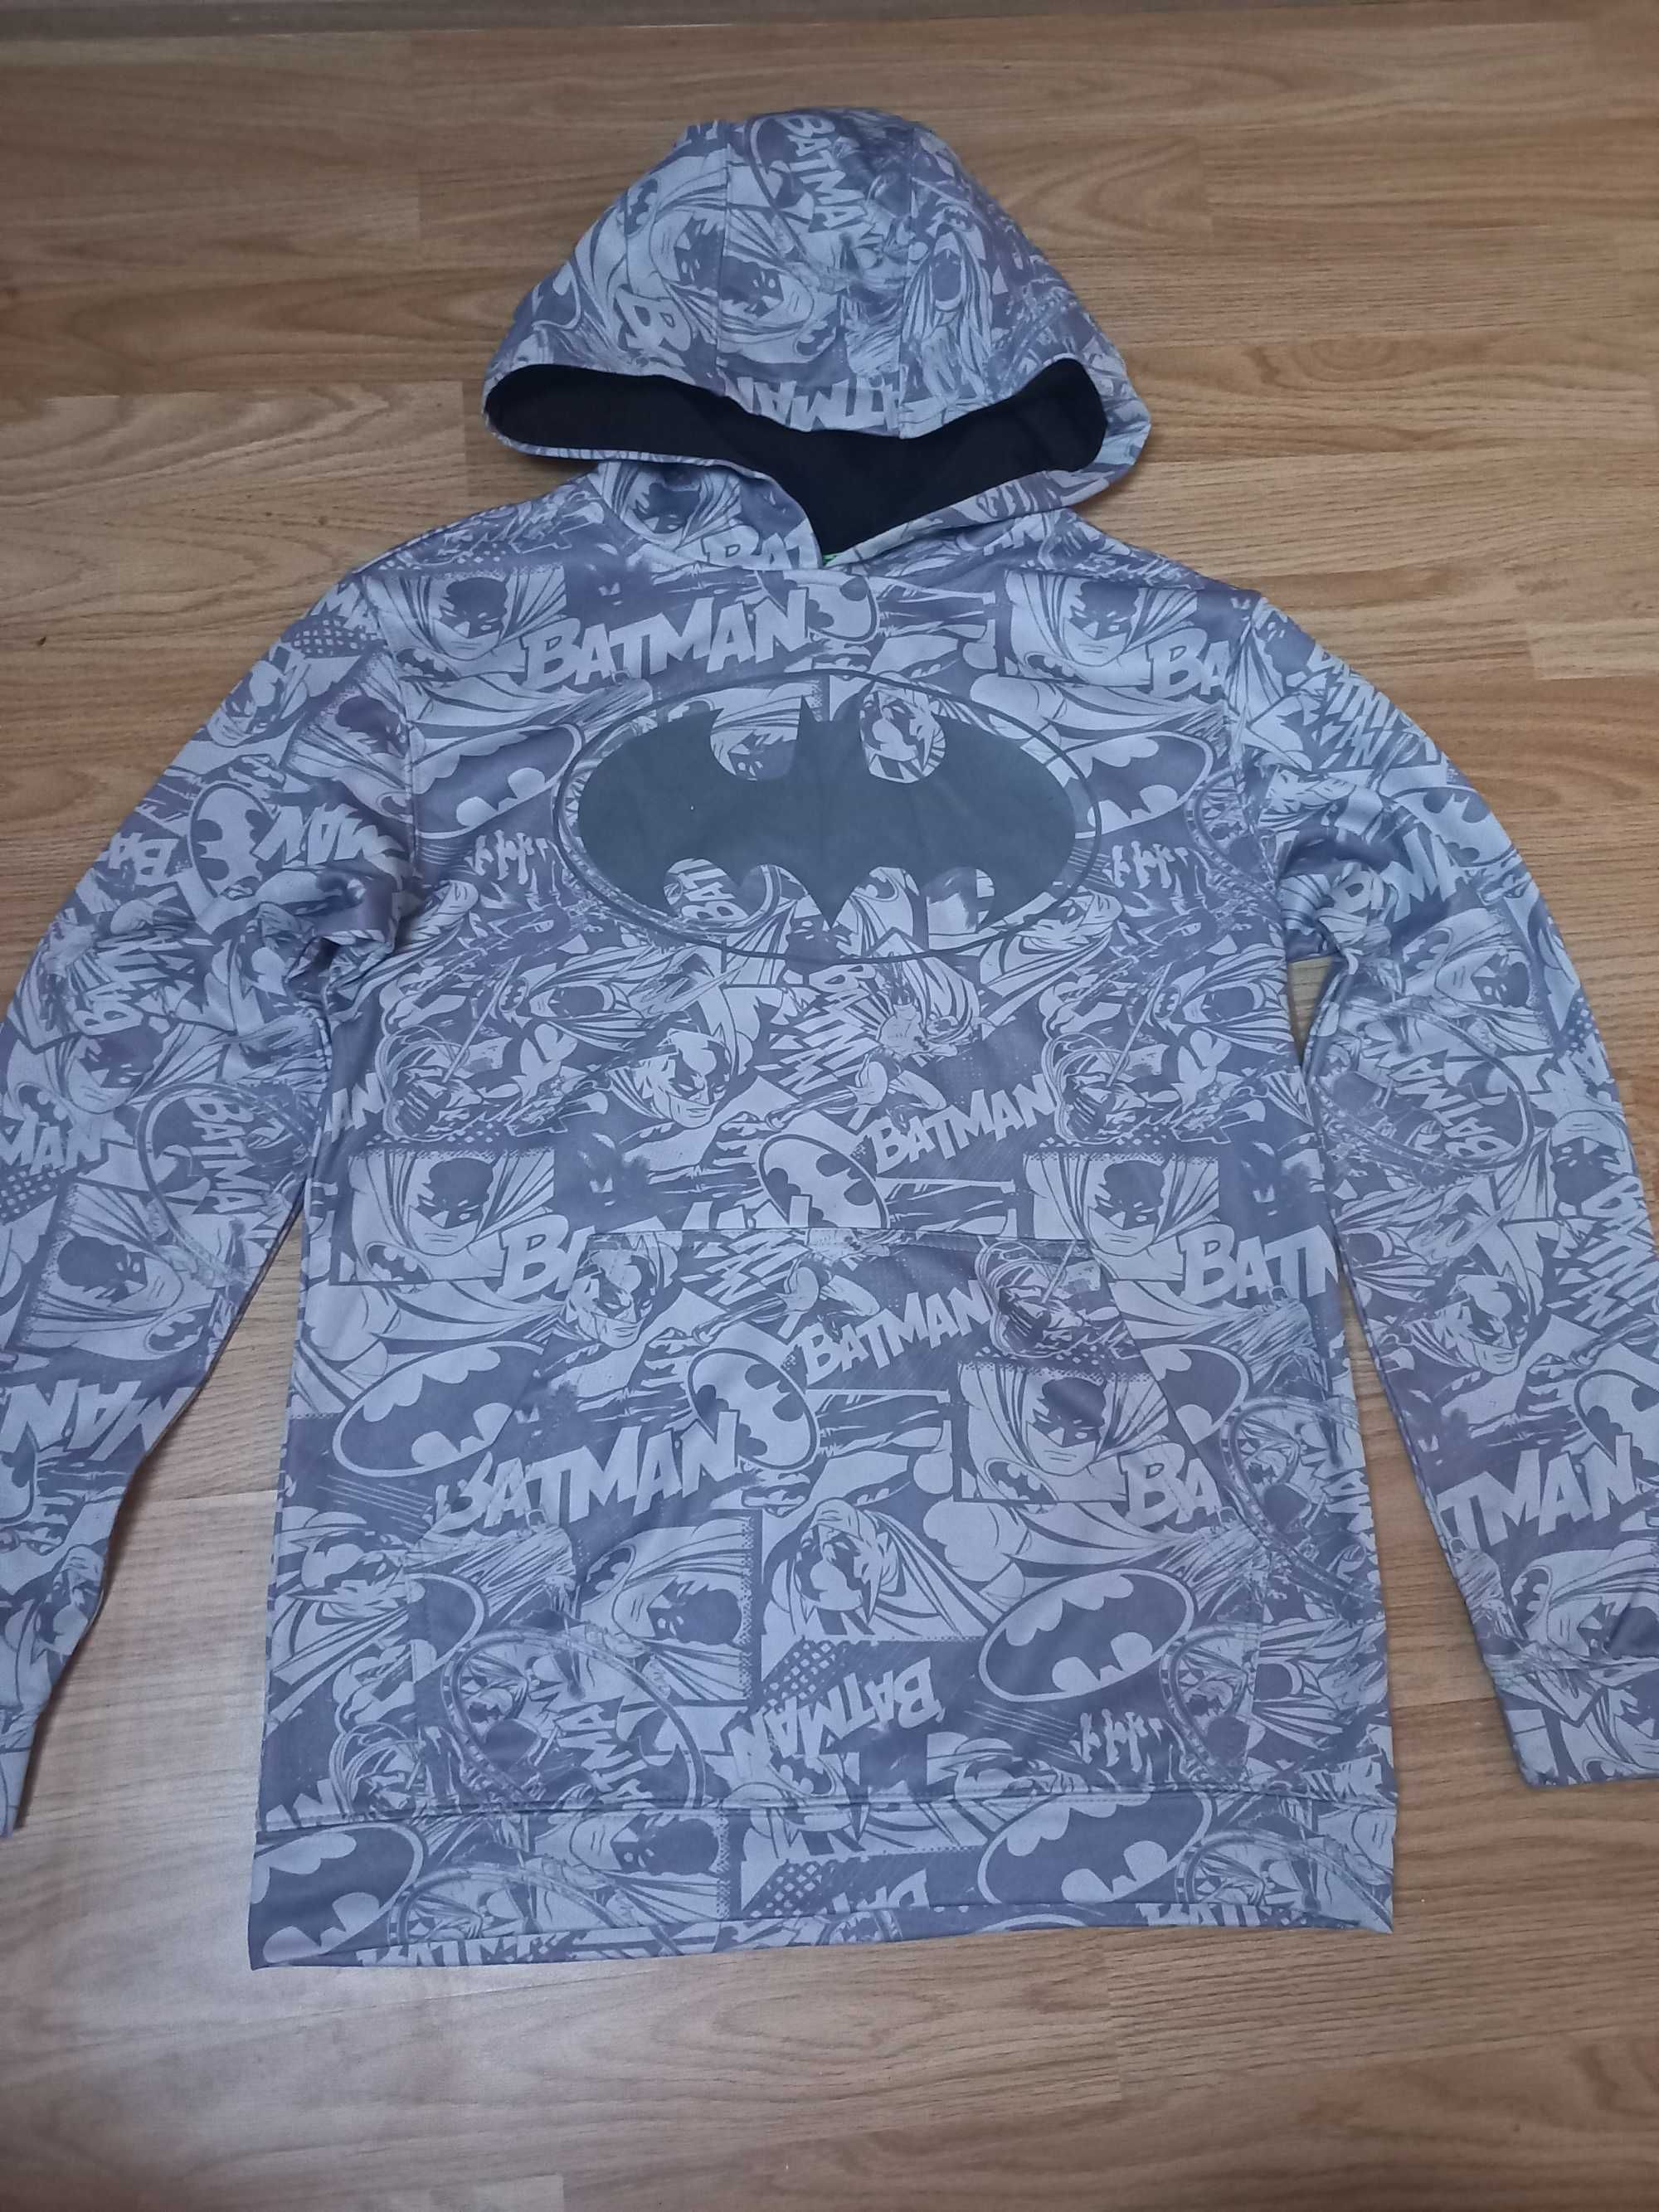 Szara bluza Batman dla chłopca rozmiar 152-158